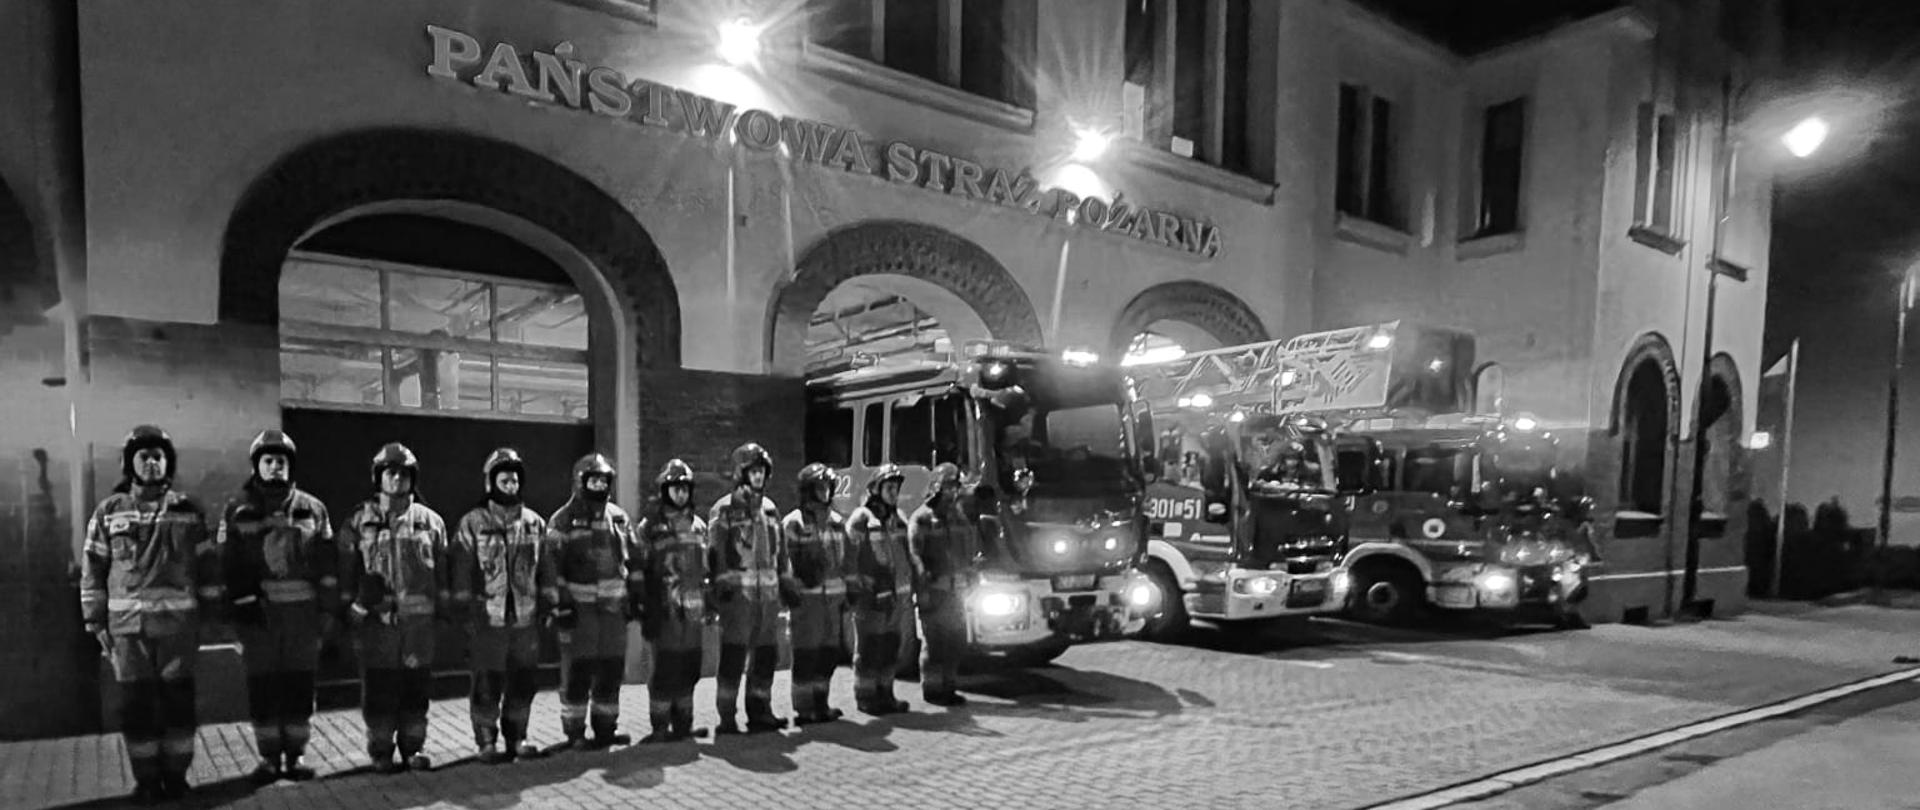 Strażacy na zbiórce w szeregu w ubraniach specjalnych, w tle przody wozów pożarniczych i frontowa elewacja budynku JRG1. Zdjęcie czarno-białe.